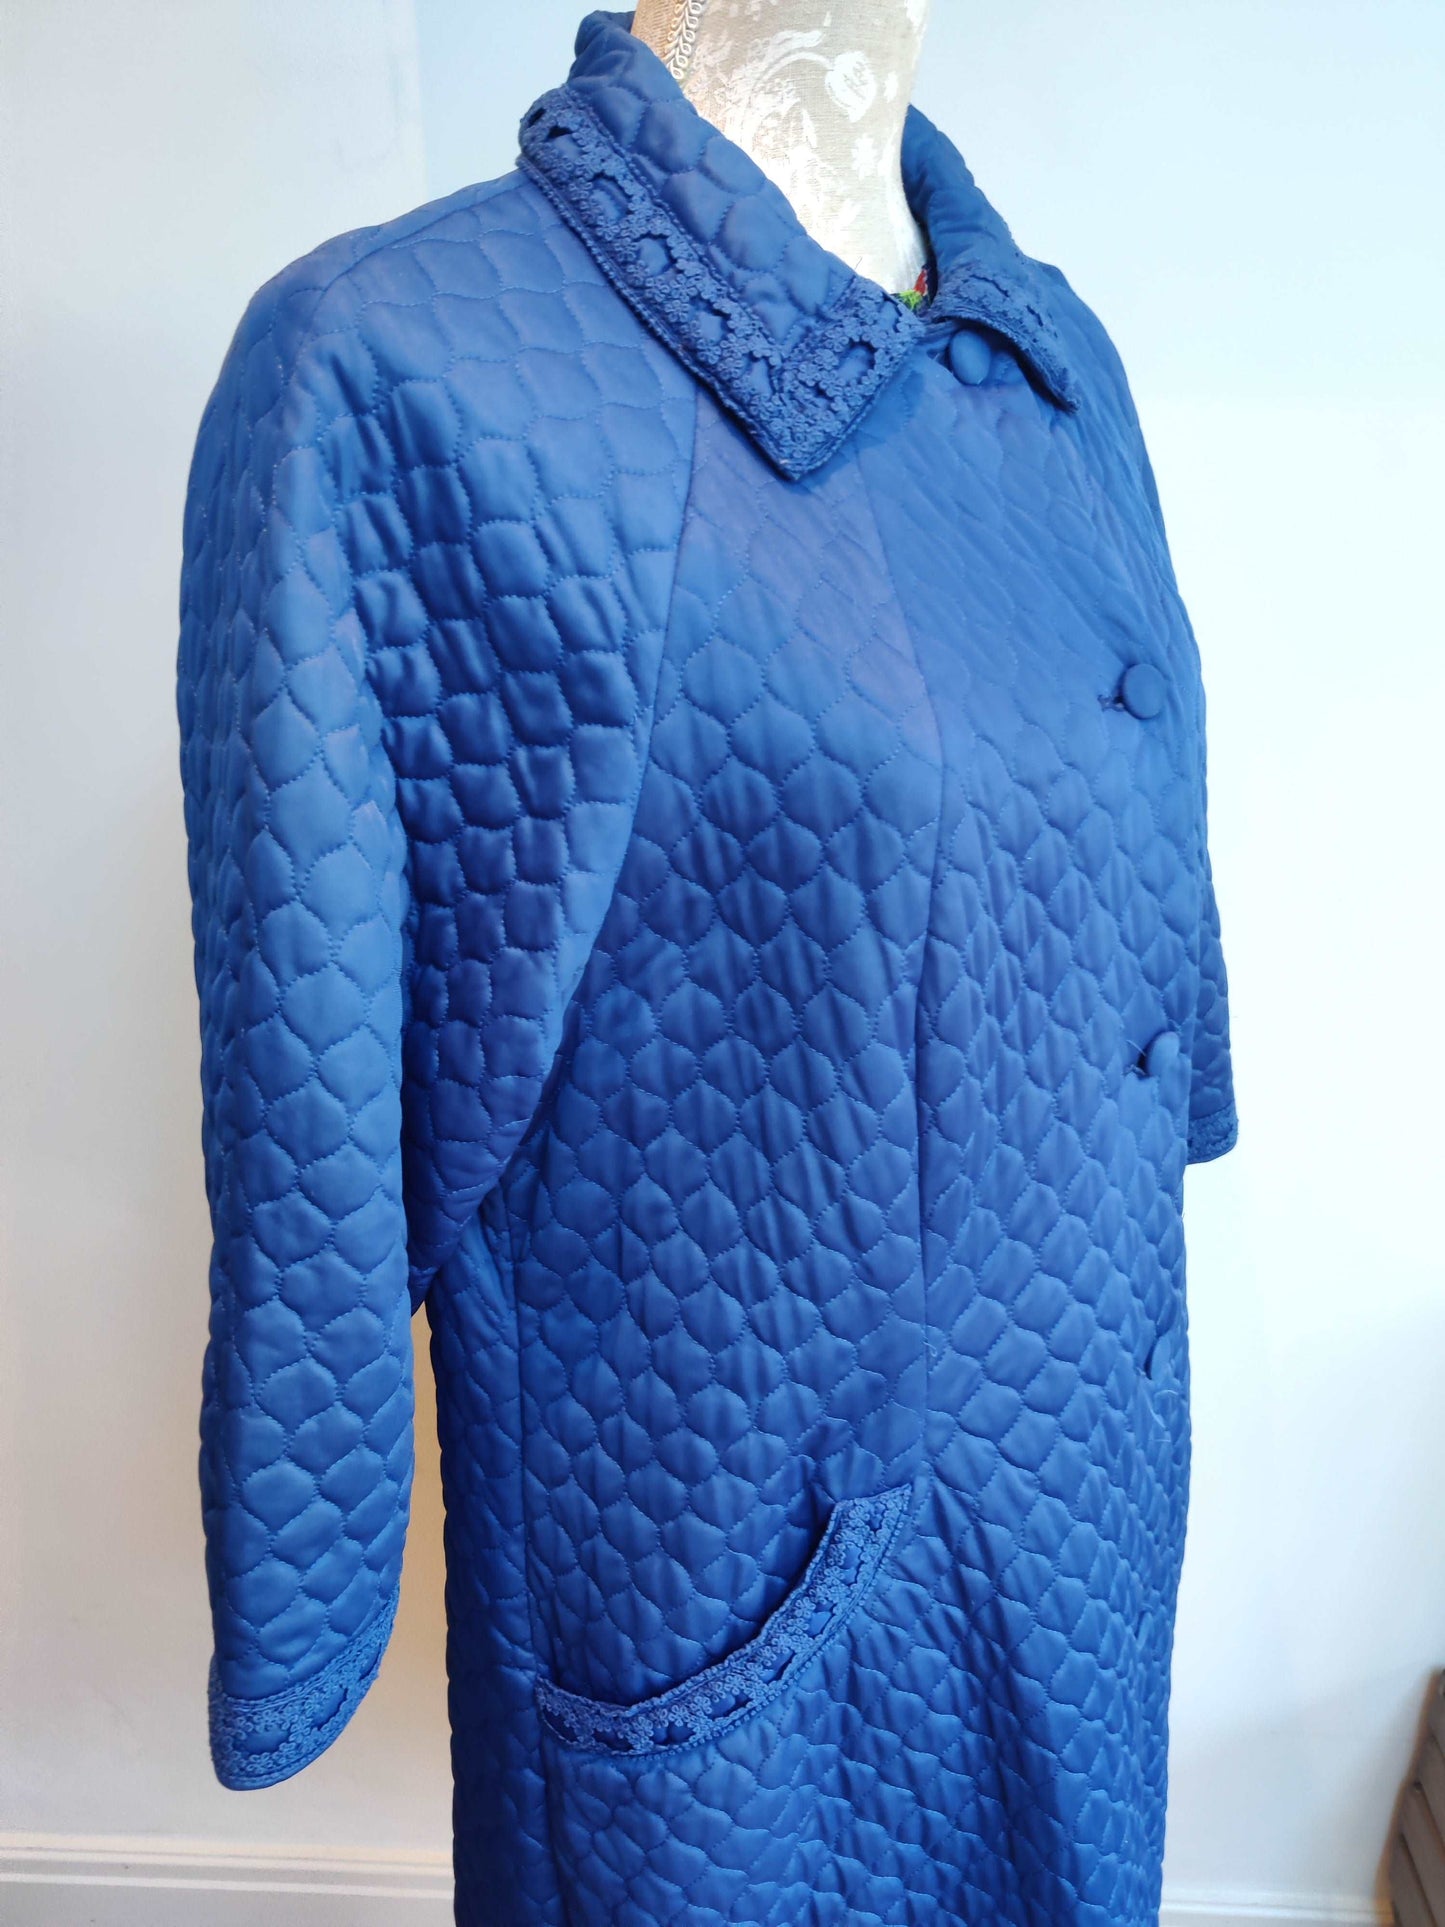 Blue vintage jacket with 3/4 sleeves